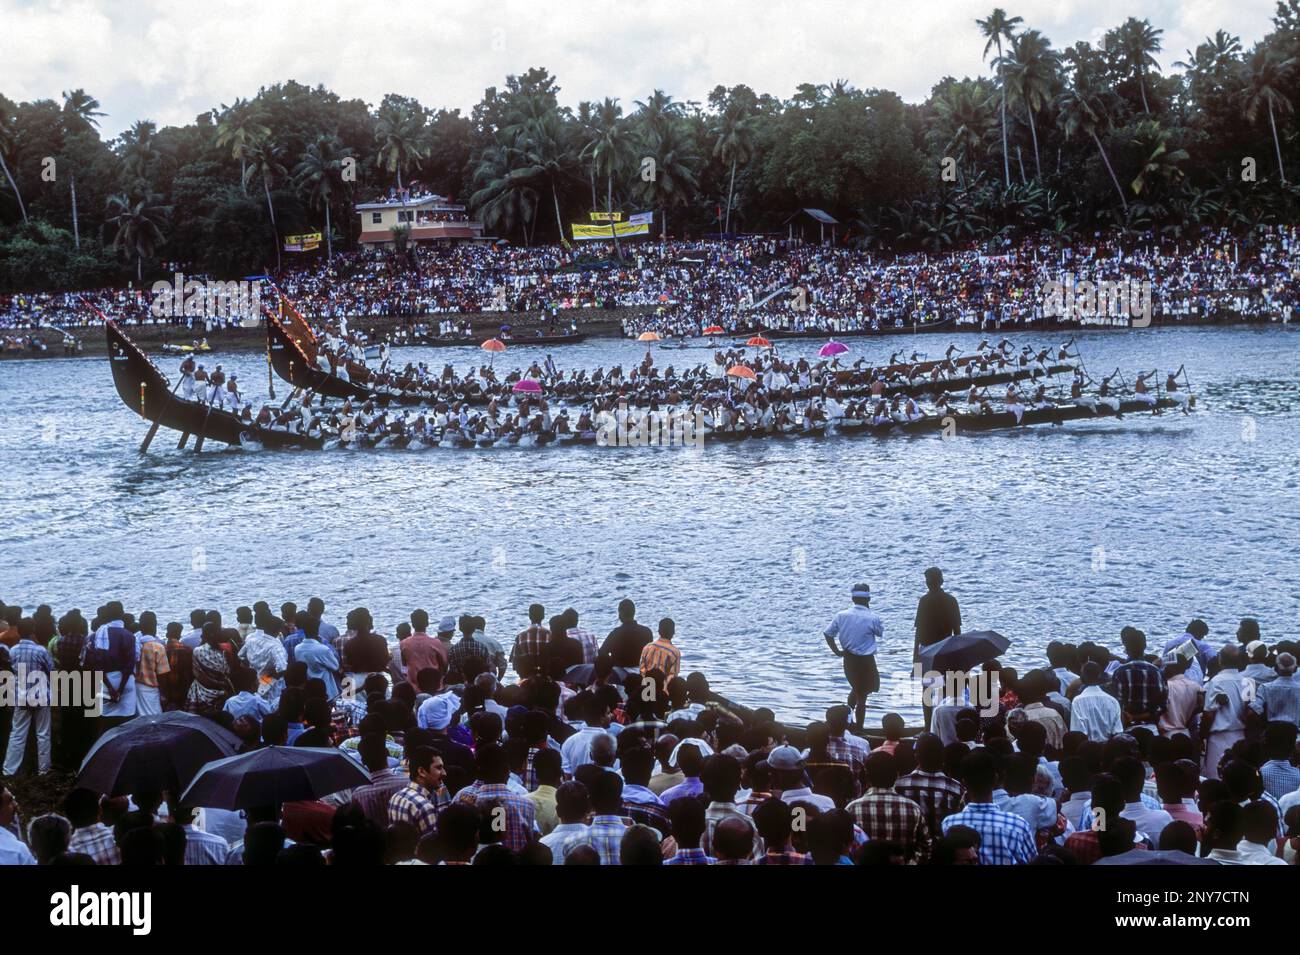 Festival Aranmula Vallamkali, course de bateaux de serpent, sur la rivière Pampa pendant le festival Onam à Aranmula, Kerala, Inde du Sud, Inde, Asie Banque D'Images